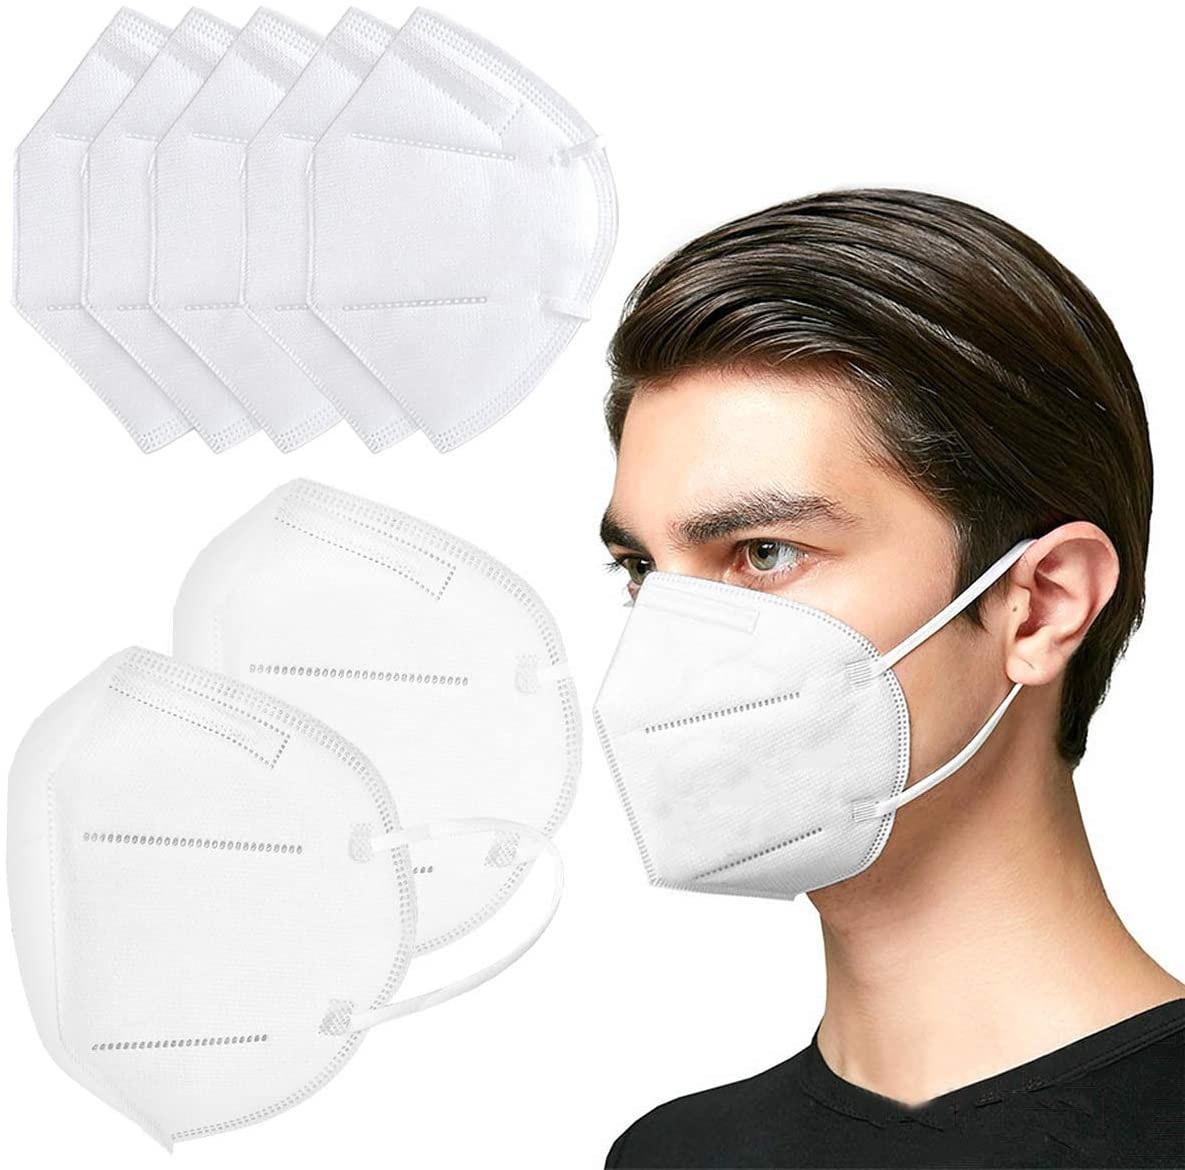 Купить медицинские маски в москве. Маска респиратор KN 95. Protective Mask kn95. Маска ffp2. Маска защитная kn95.